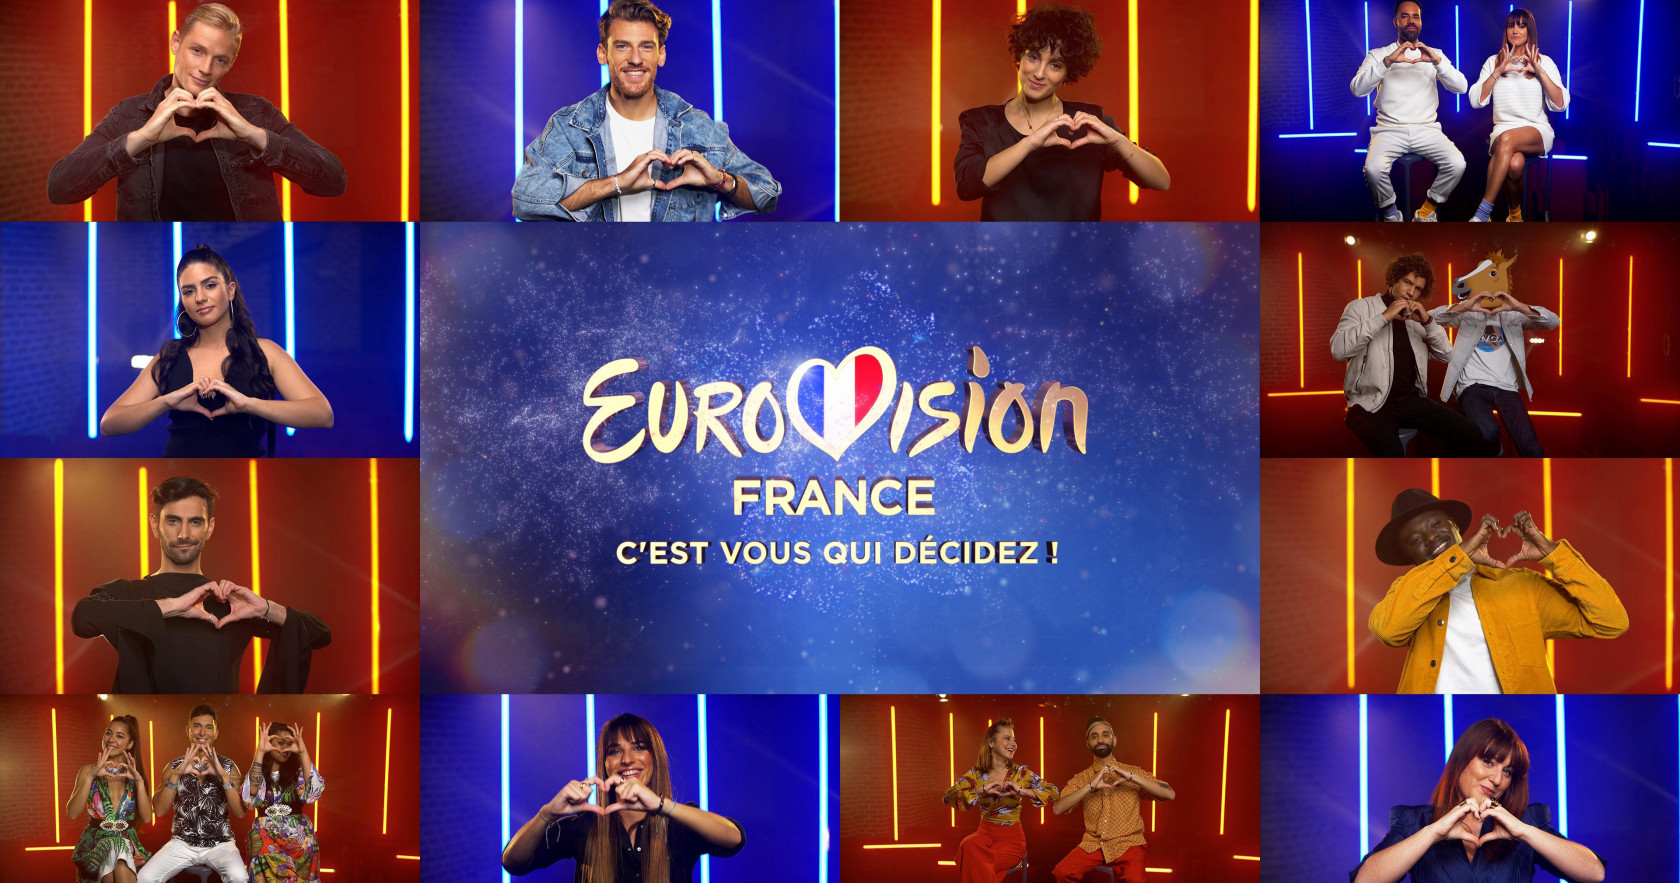 Eurovision France C'est vous qui décidez! EuroVisionary